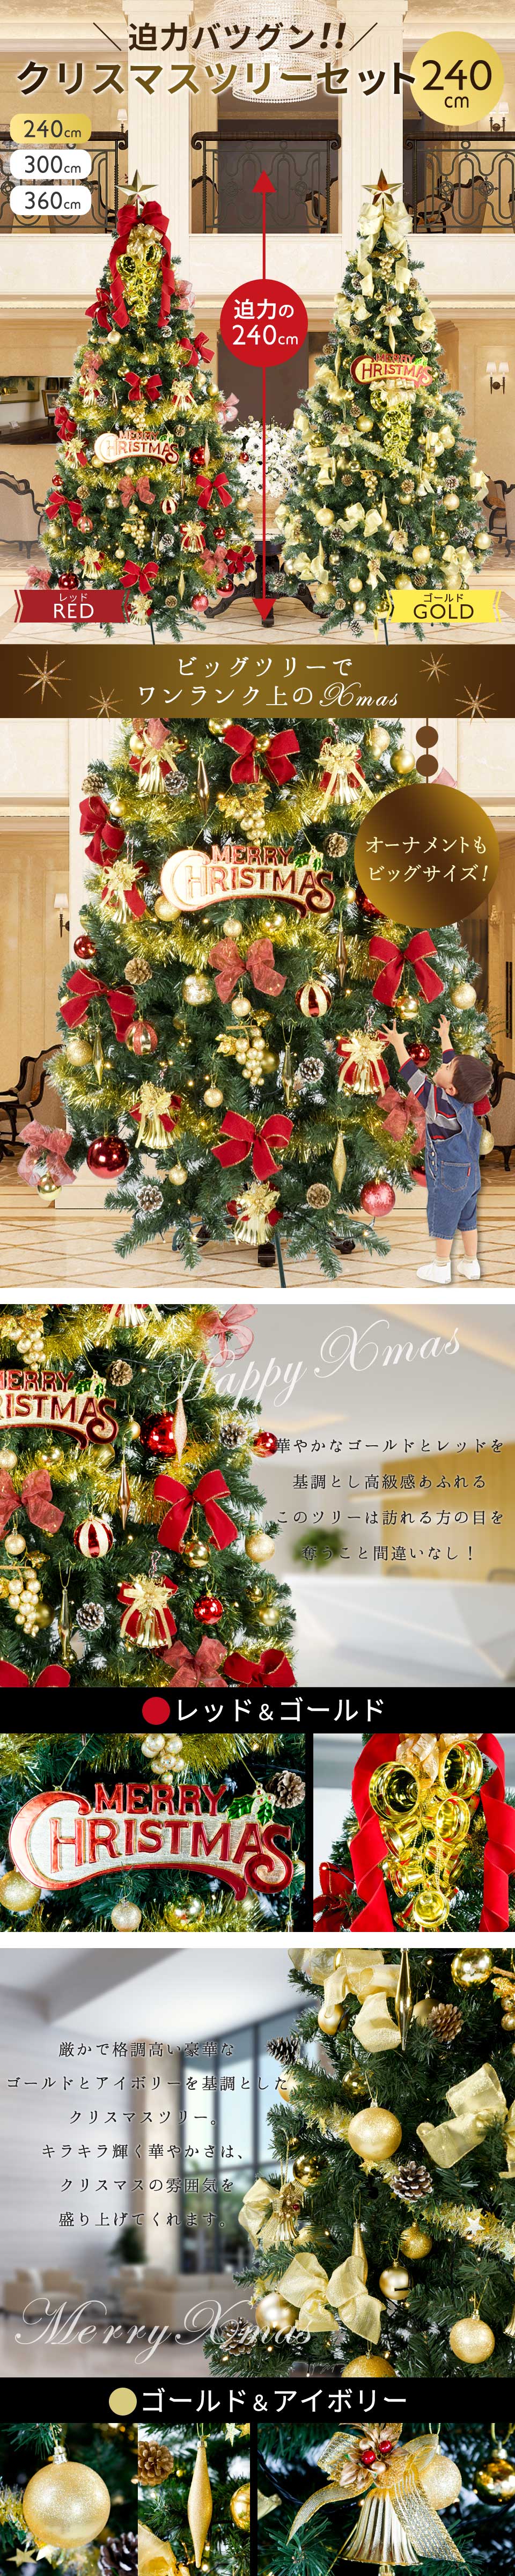 パステルオリーブ クリスマスツリー 240cm 56433 インテリア雑貨